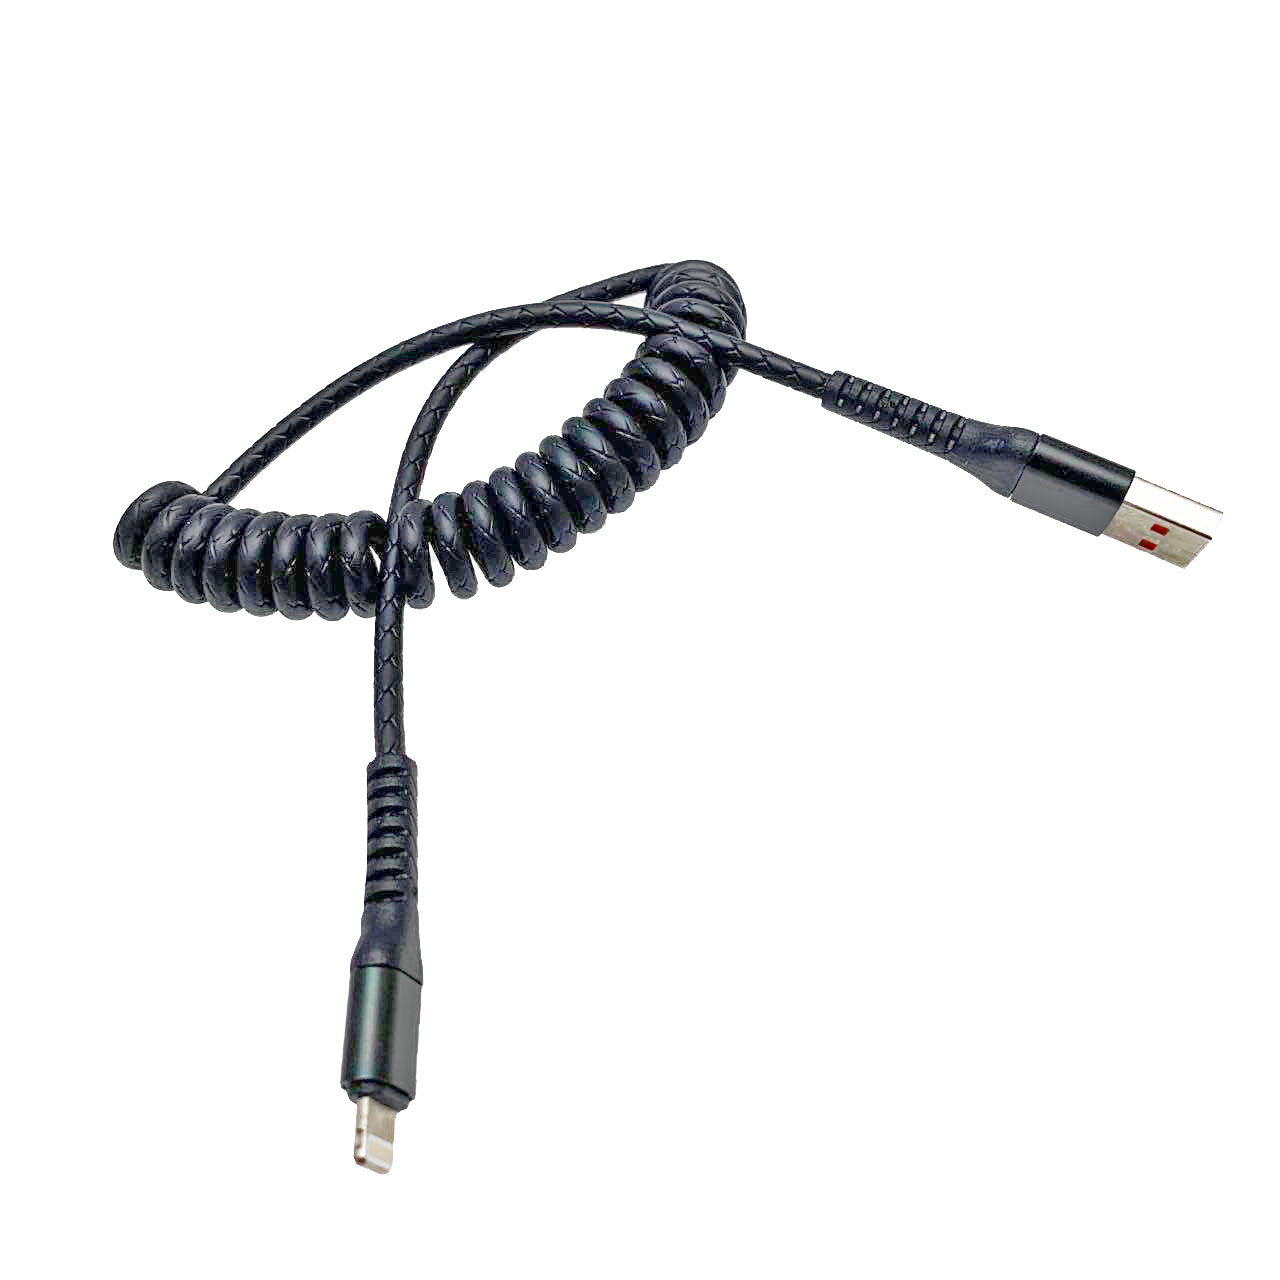 USB Дата-кабель "XB X13" APPLE USB Lightning 8-pin силиконовый 1 метр, витой, цвет чёрный, оранжевые контакты.